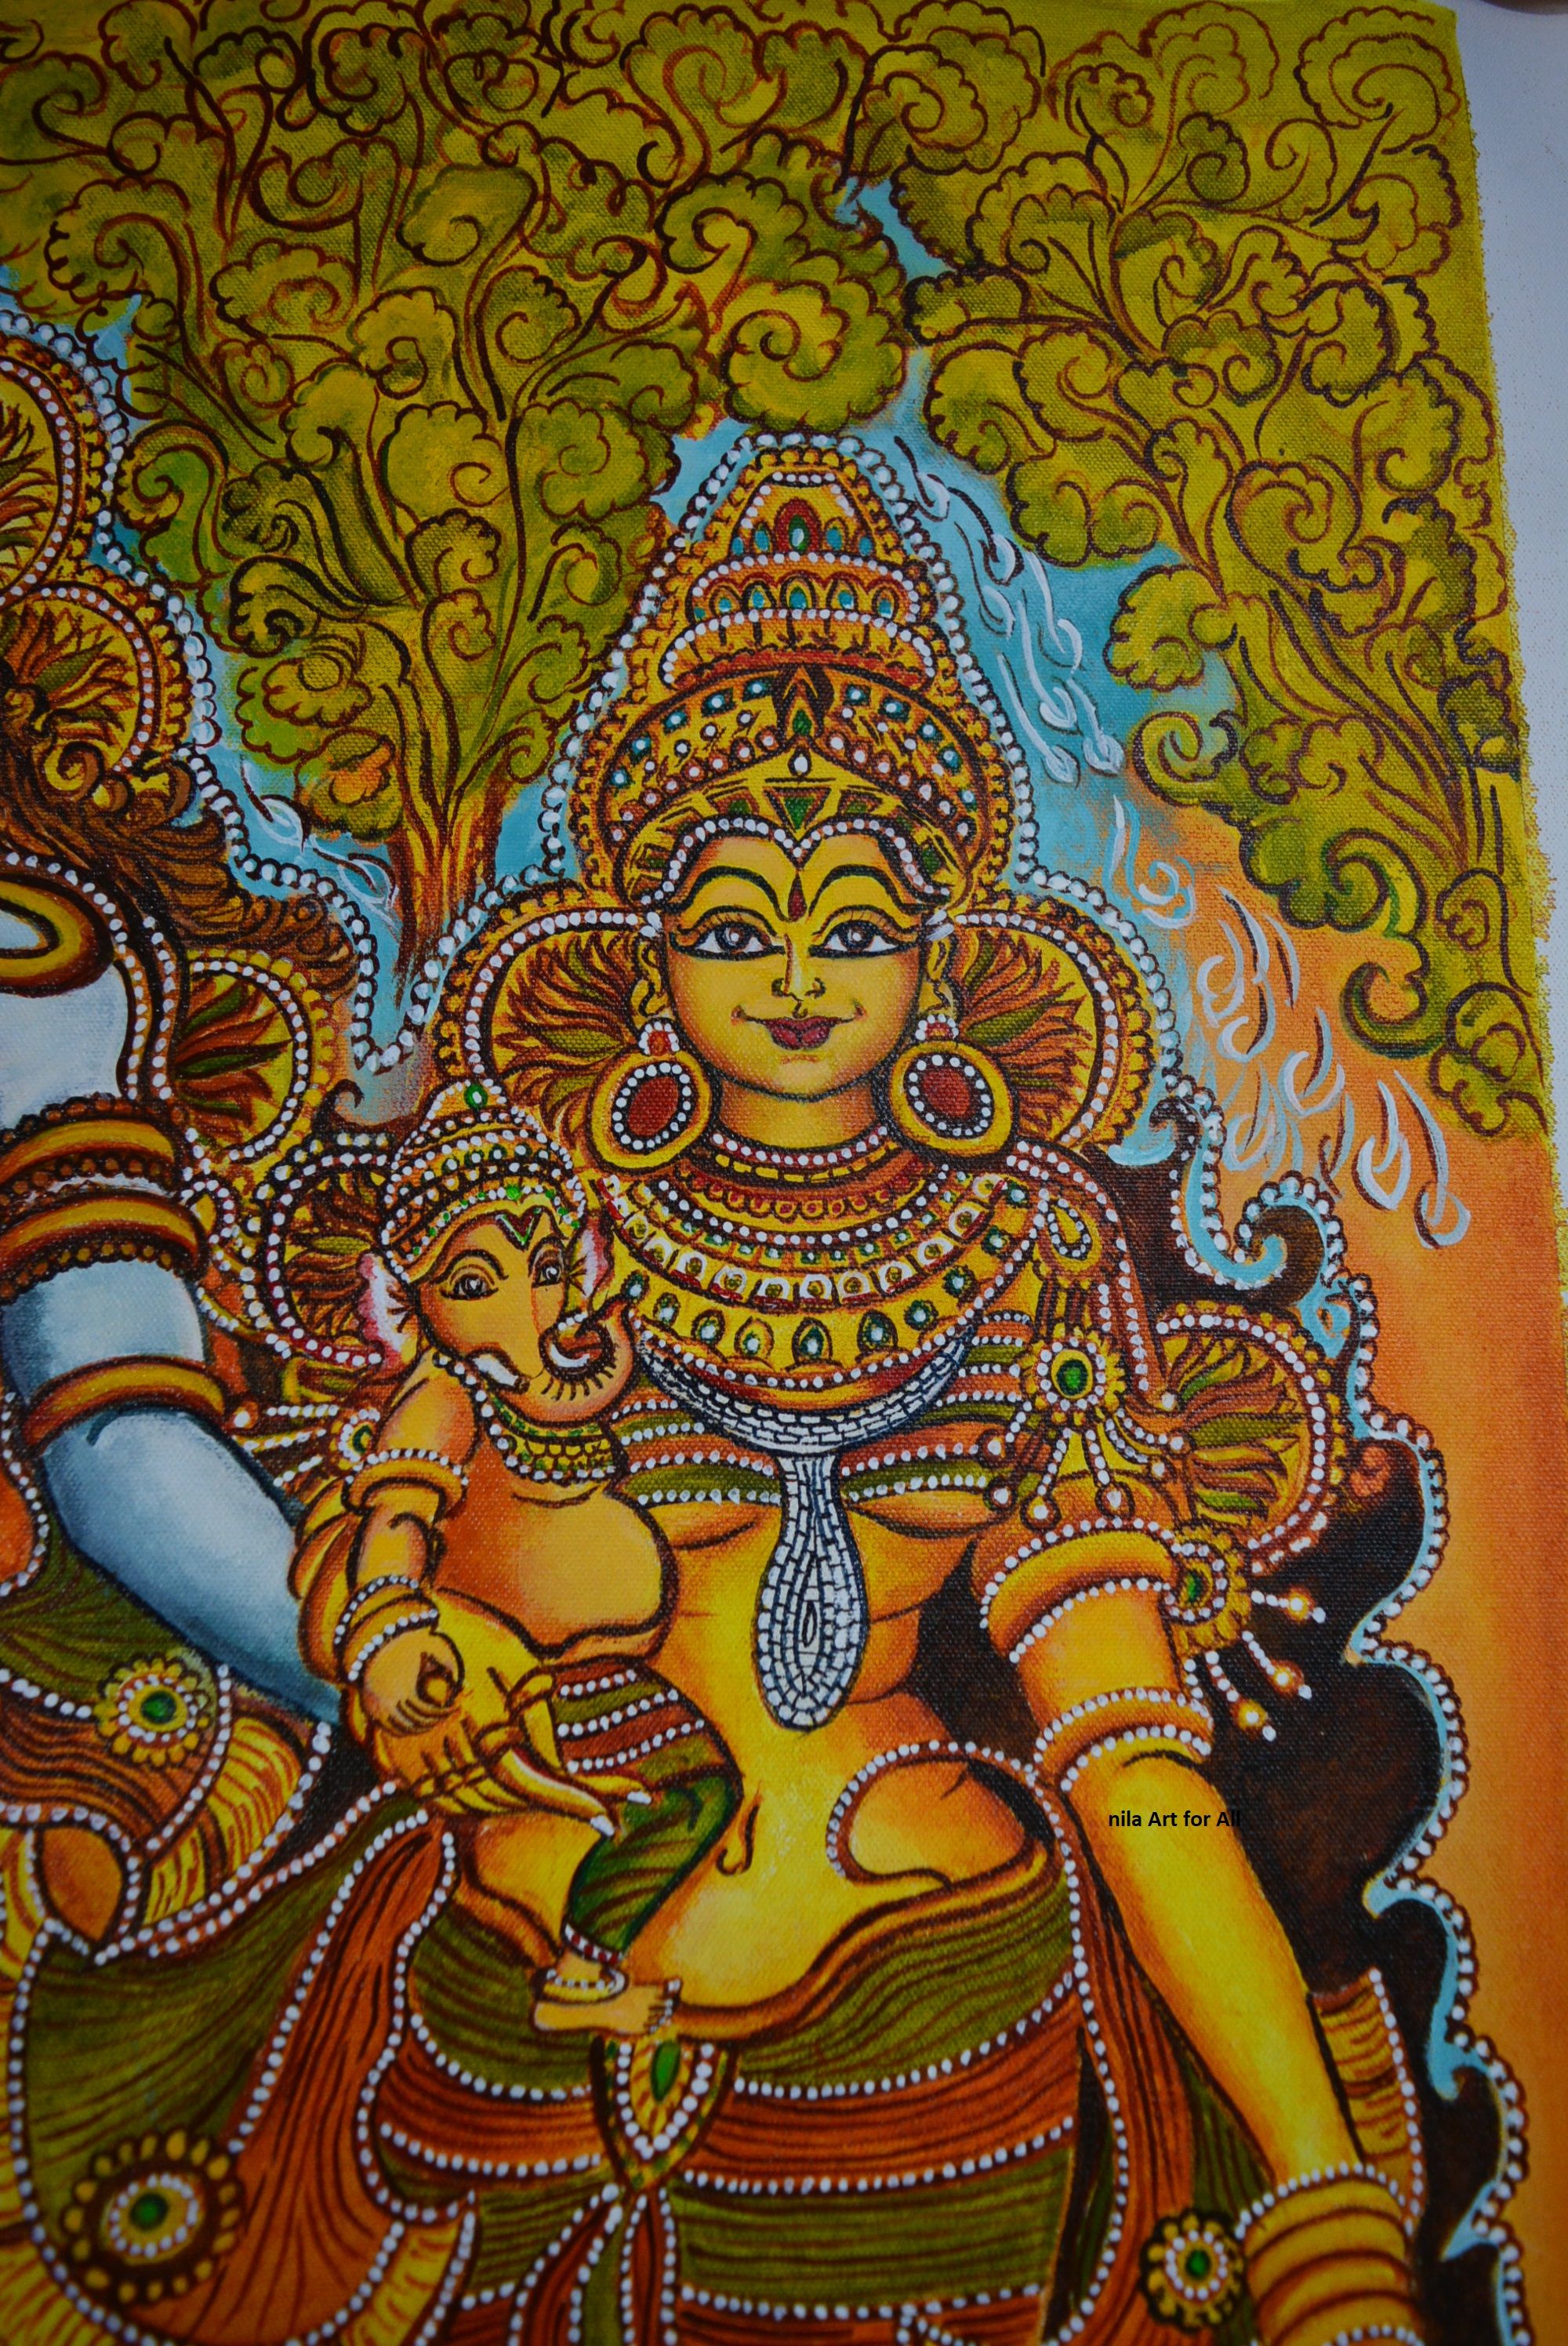 Kerla Mural painting, Lord Ganesha. Kerala mural painting, Mural painting, Mural